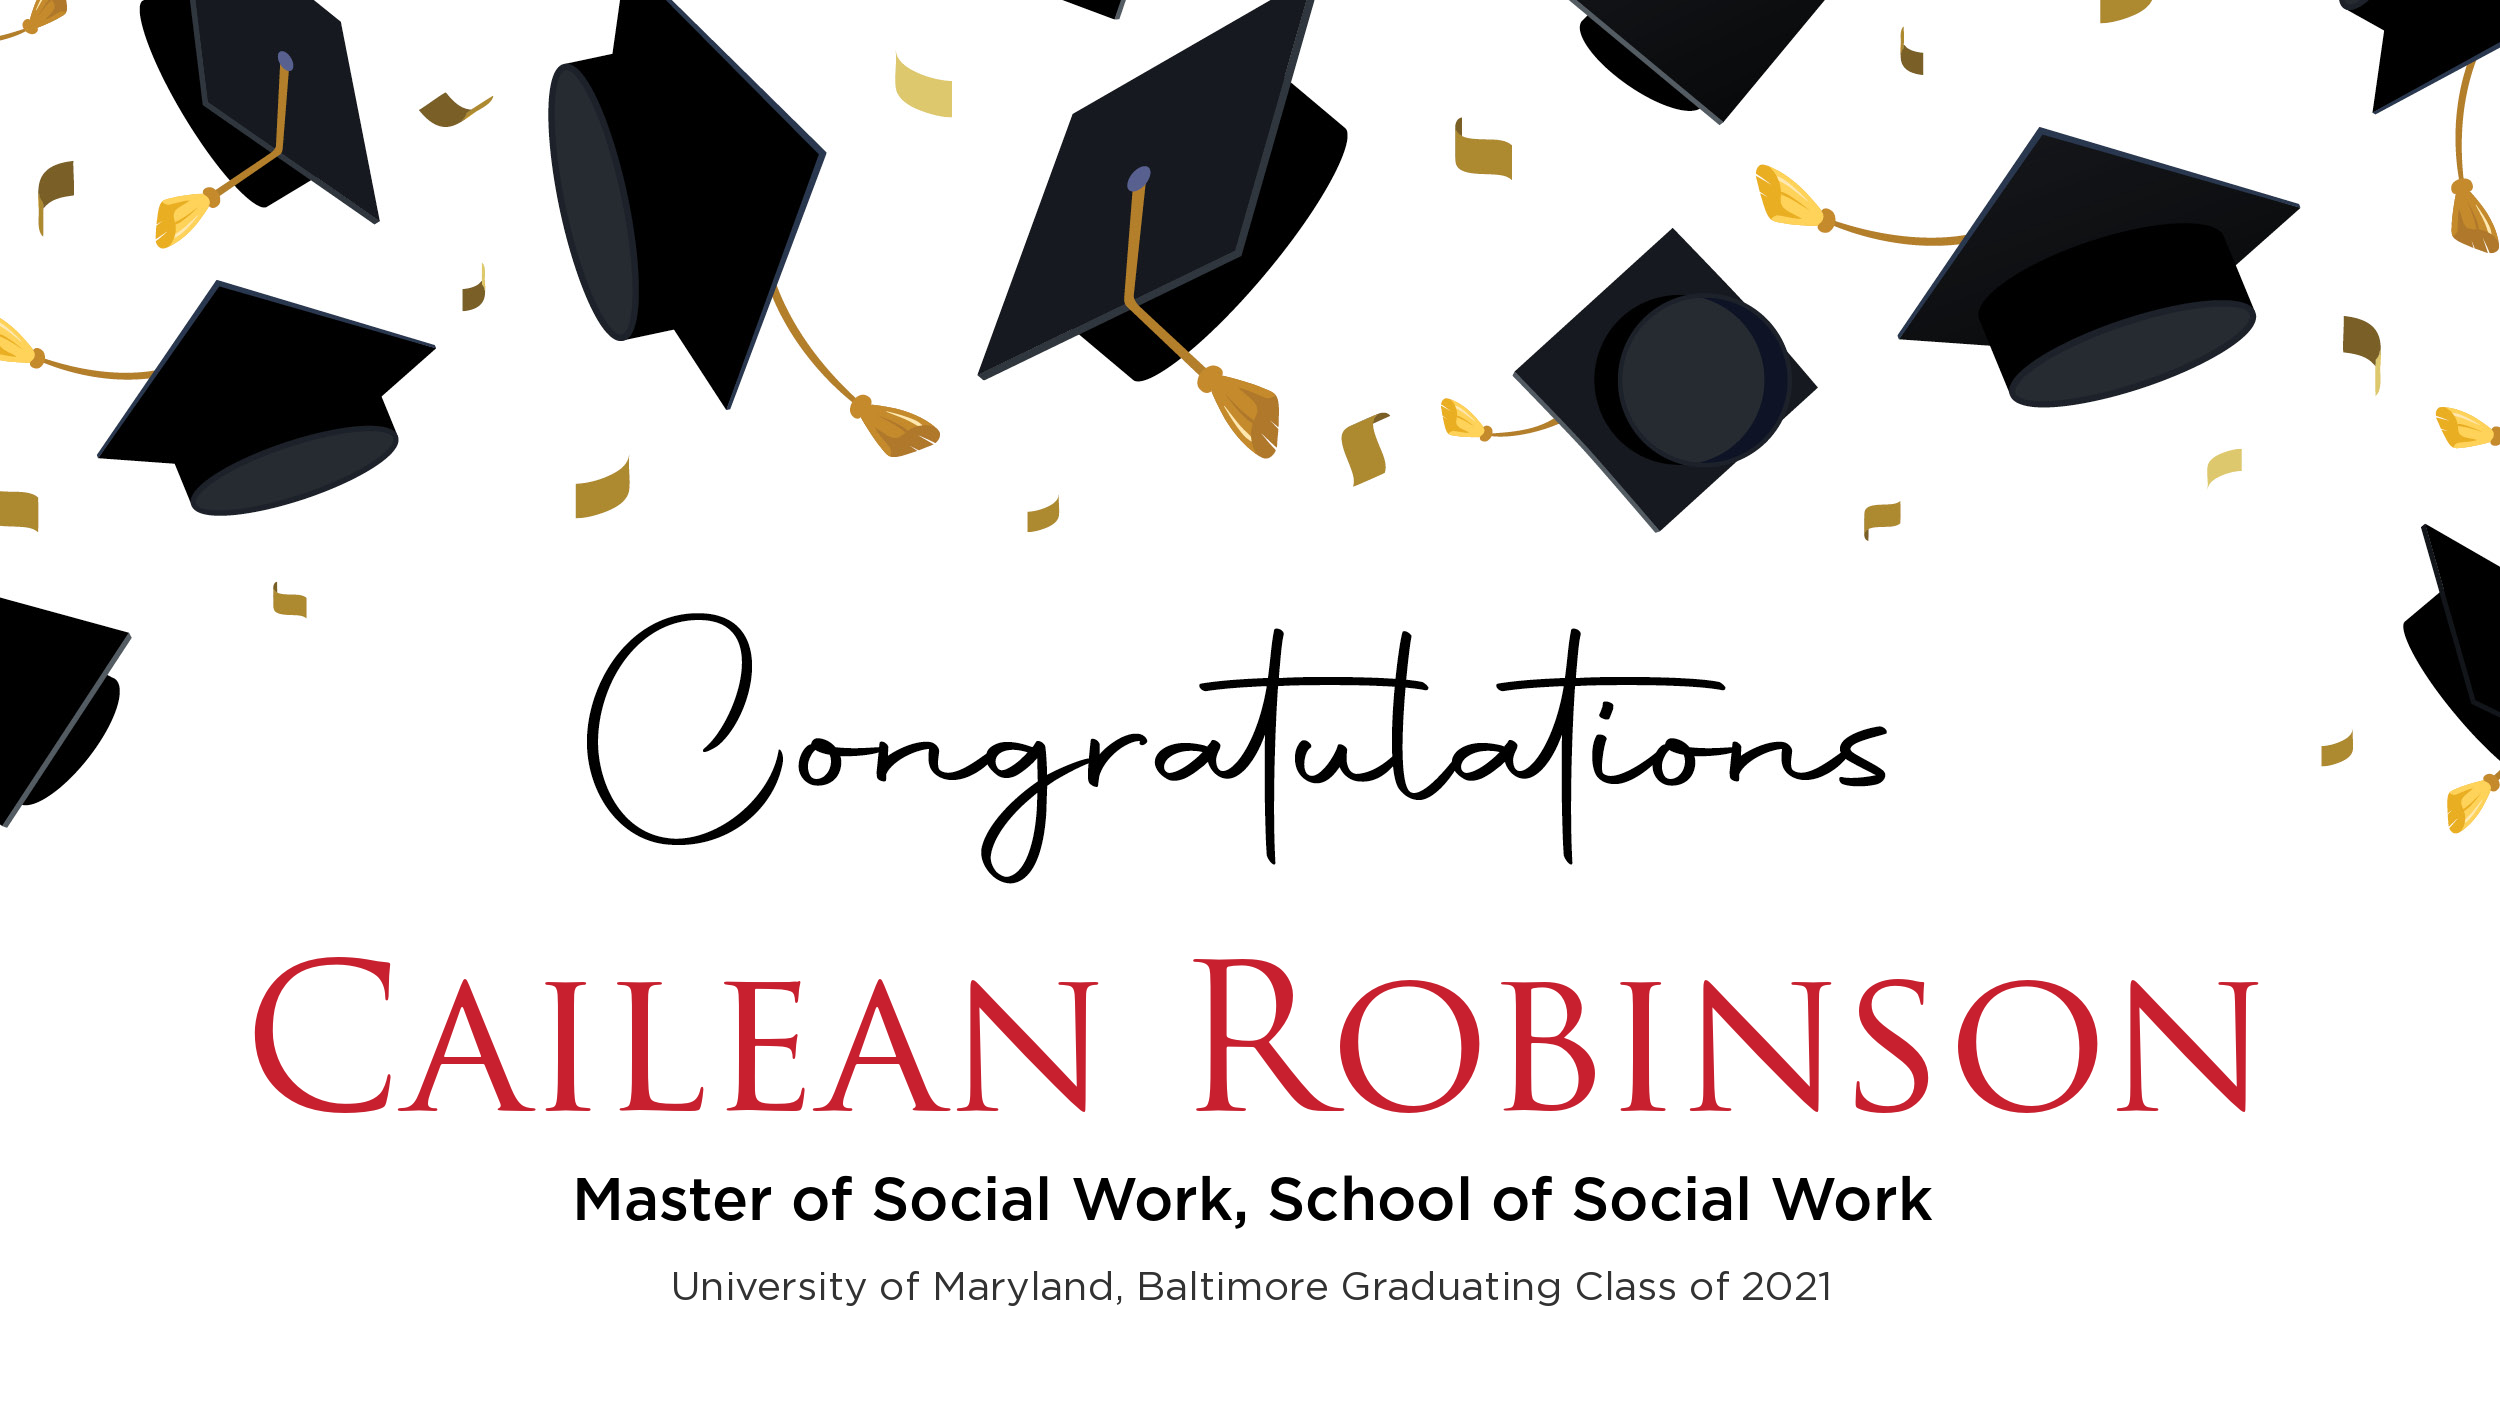 Congratulations Cailean Robinson, Master of Social Work